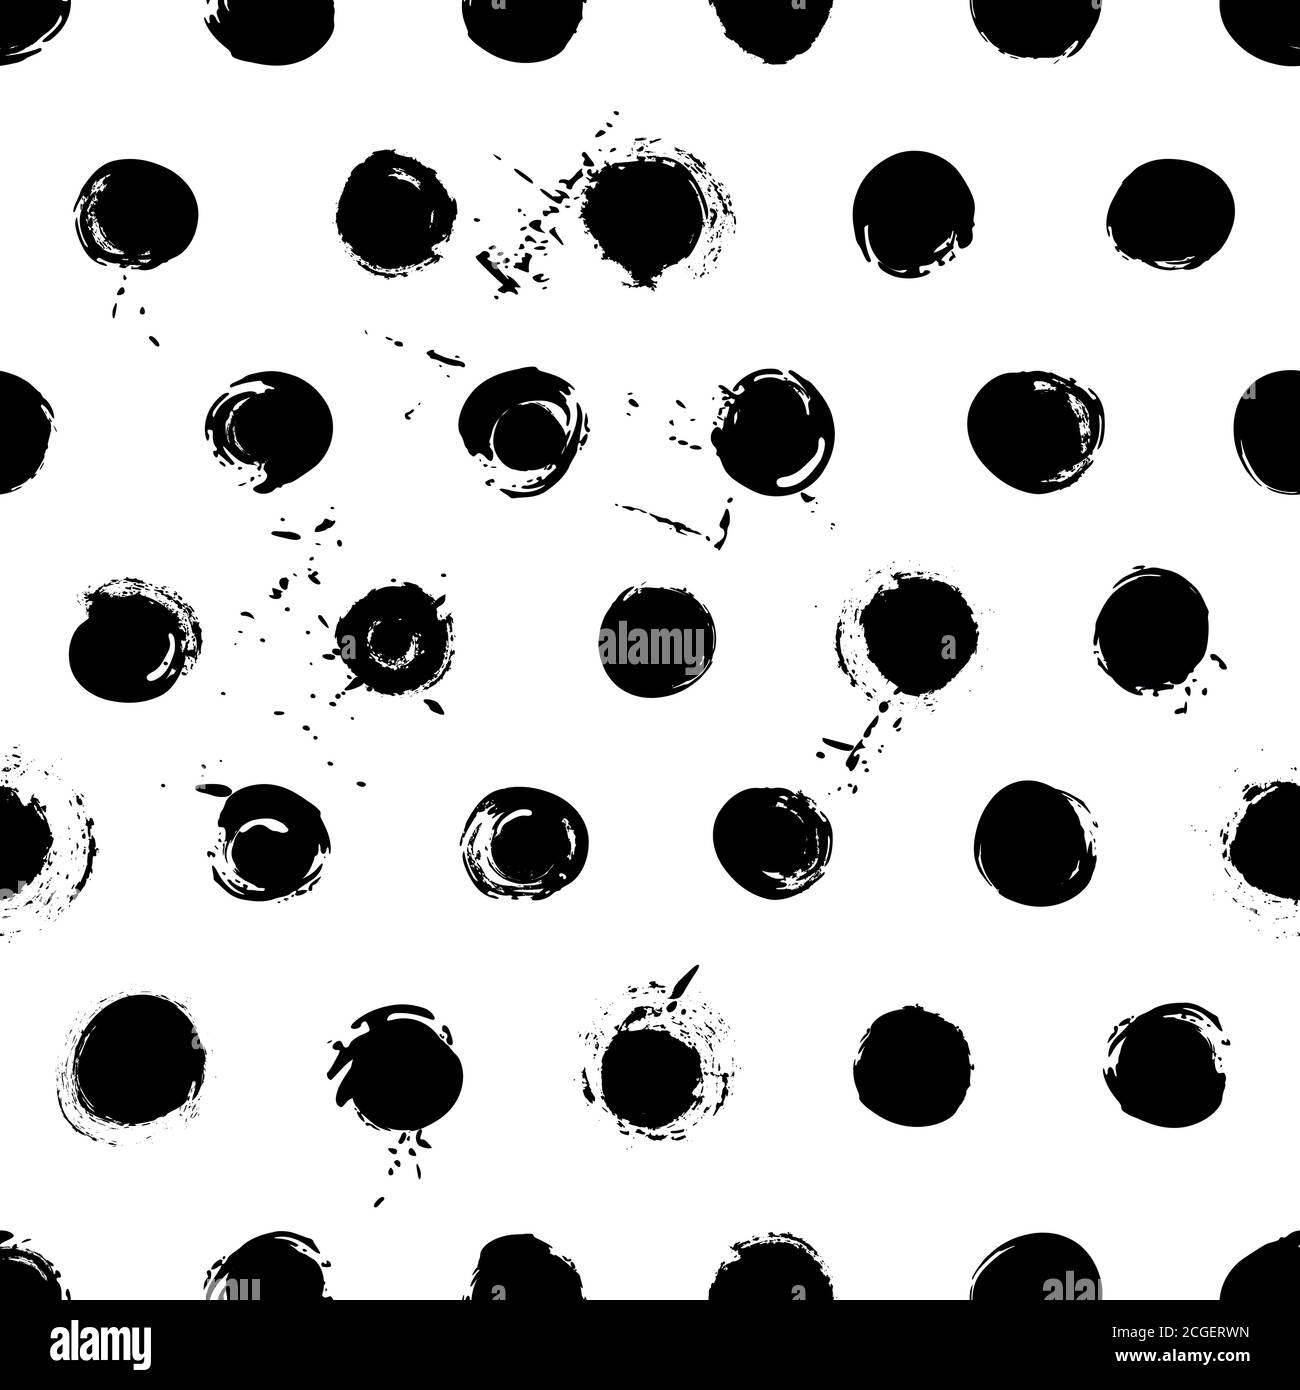 Nahtloses Hintergrundmuster, mit Kreisen/Punkten, Konturen und Spritzern, schwarz und weiß Stock Vektor